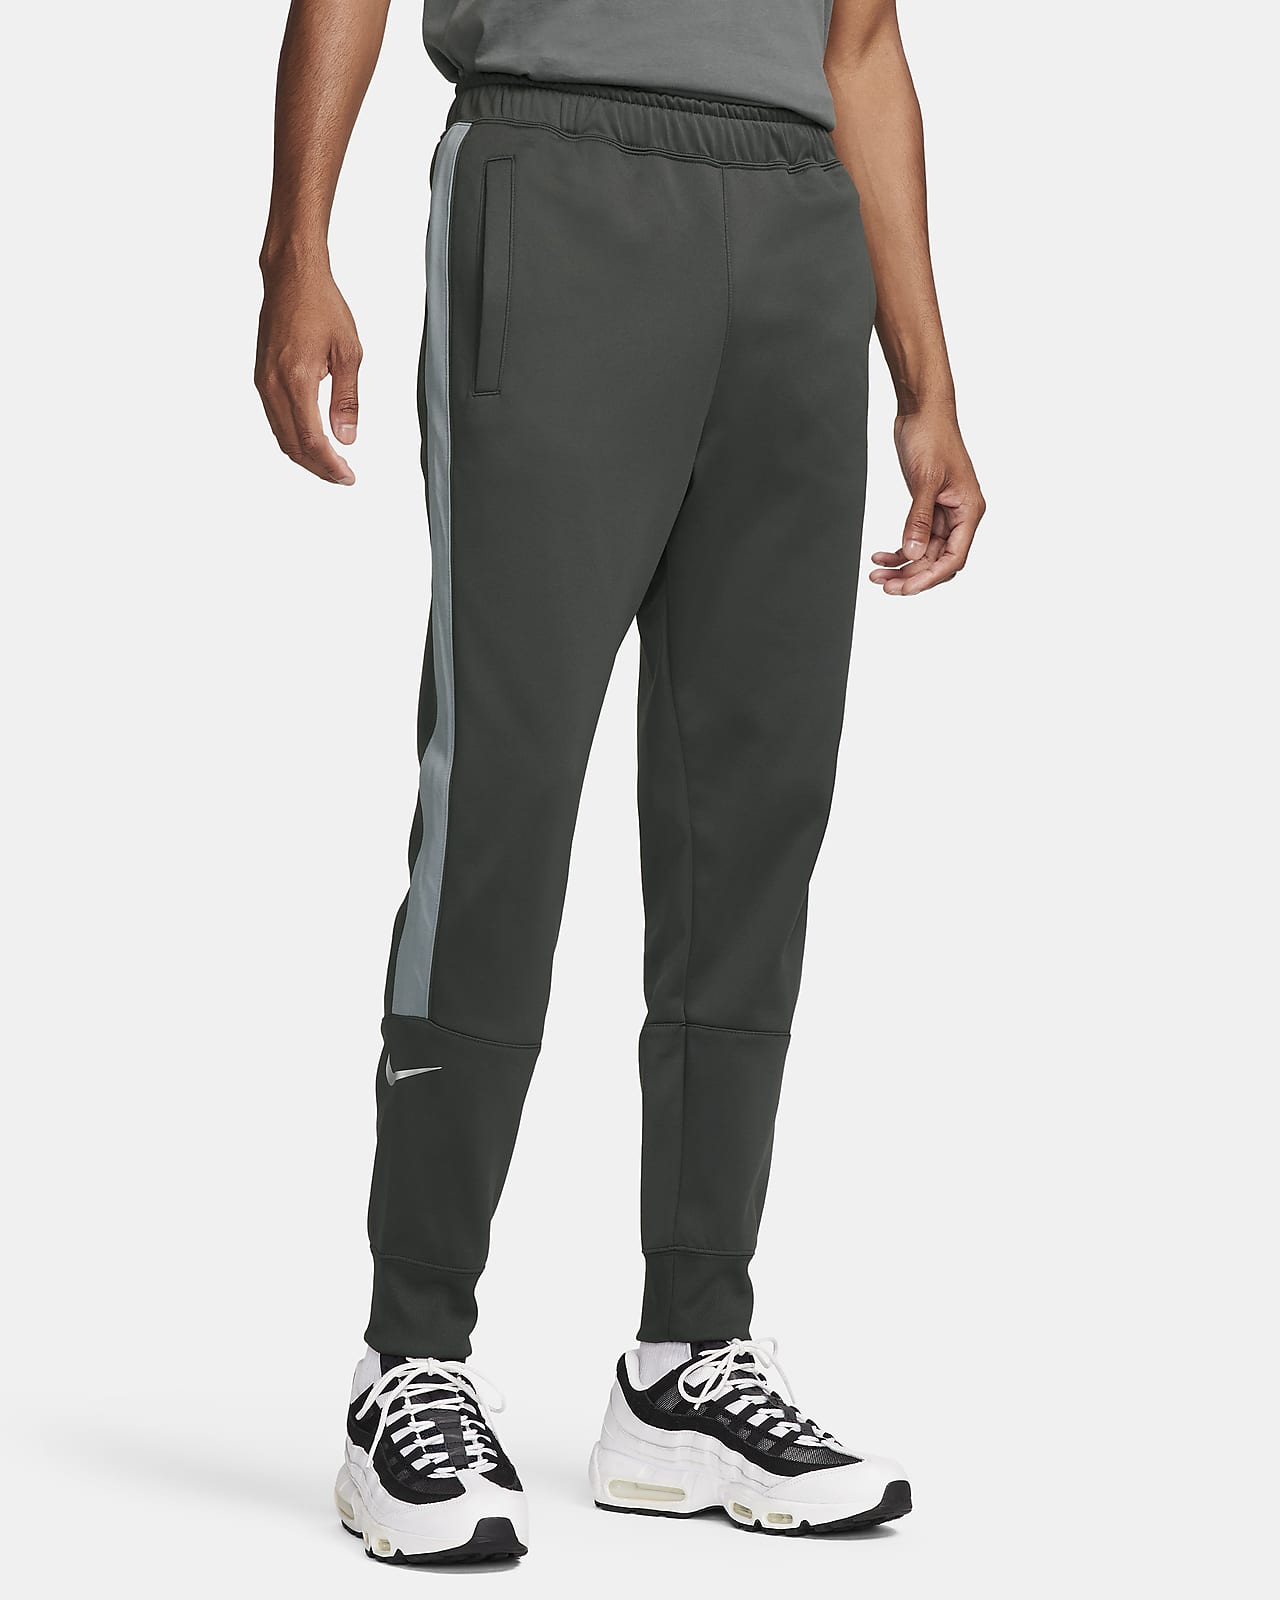 Buy AVOQ Grey Melange Smart Fit Track Pants - Track Pants for Men